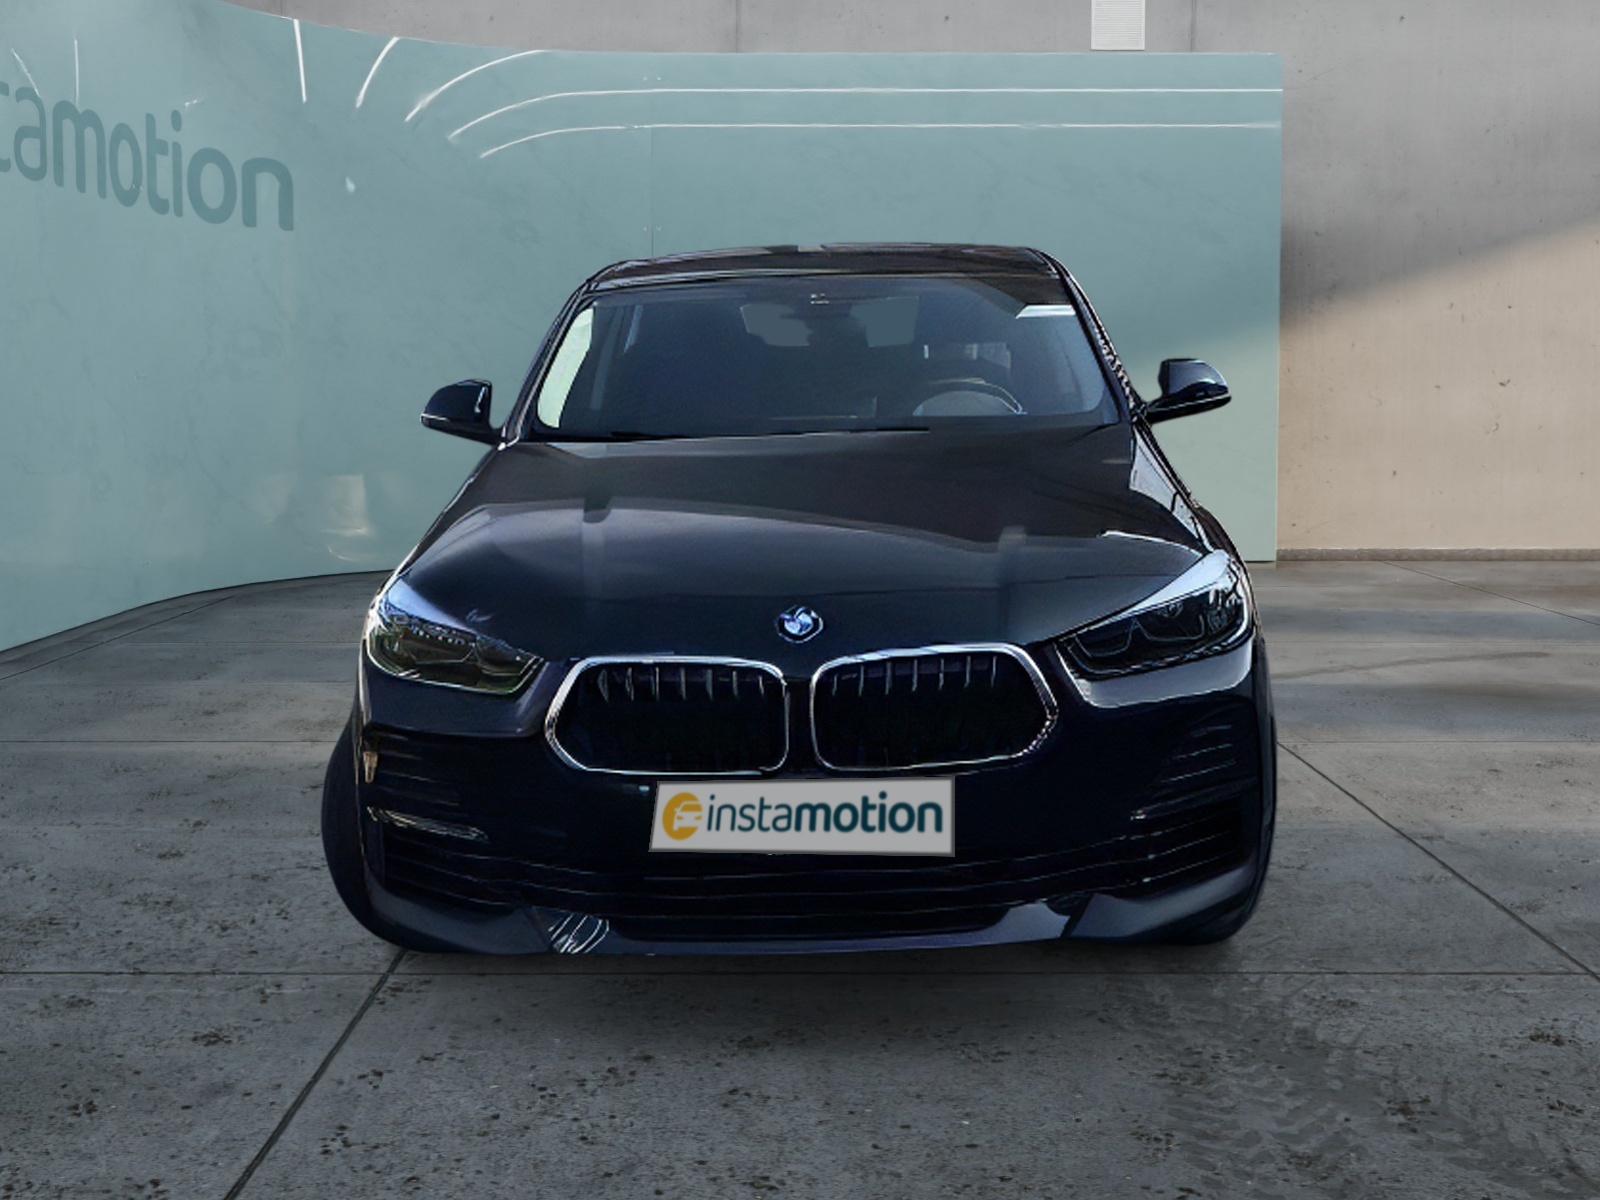 BMW X2 Gebrauchtwagen online kaufen bei instamotion